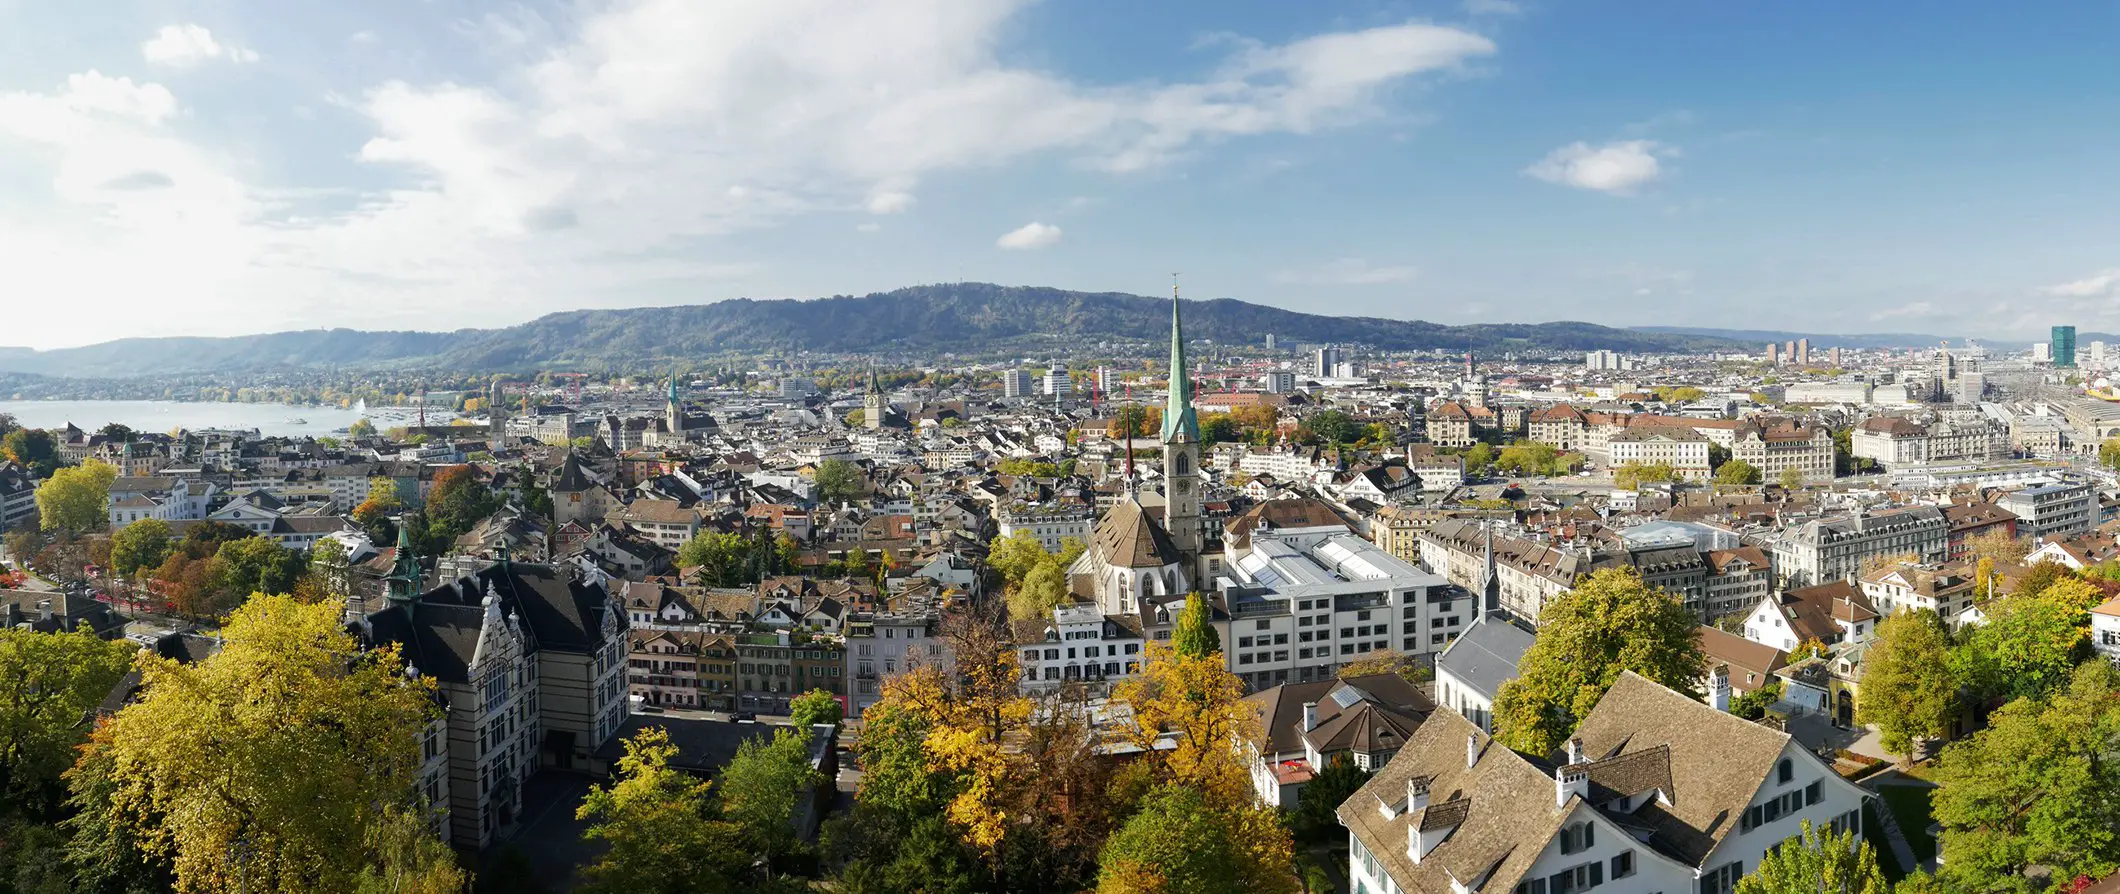 Viajar a Zurich, Suiza: Explorando la belleza y la cultura de la ciudad